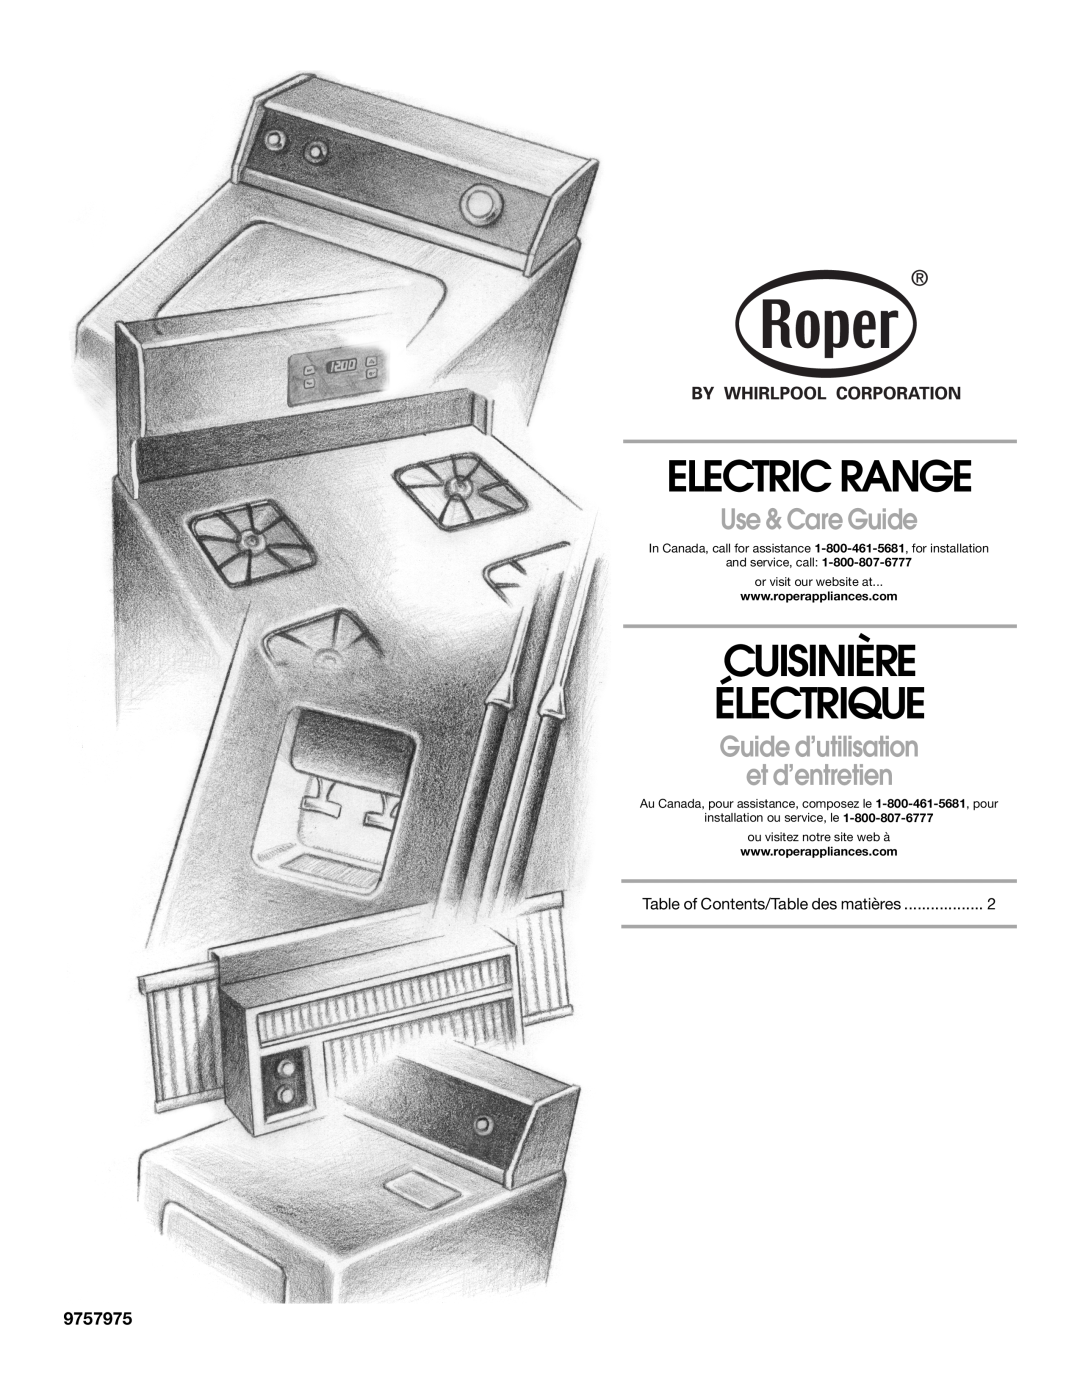 Whirlpool RME30000 manual Electric Range, Cuisinière Électrique, Use & Care Guide, Guide d’utilisation et d’entretien 